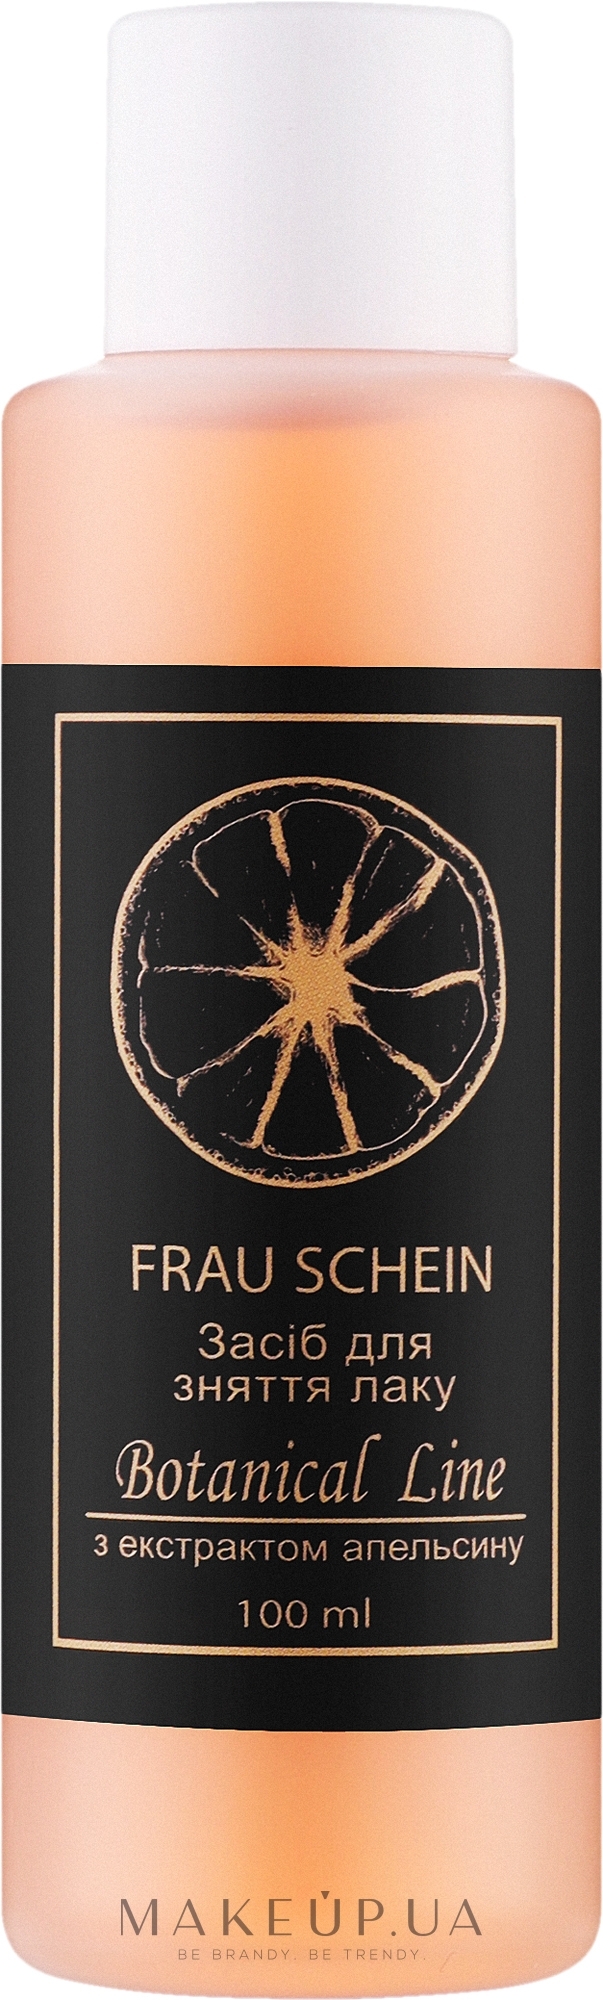 Средство для снятия лака - Frau Schein Botanical Line — фото 100ml